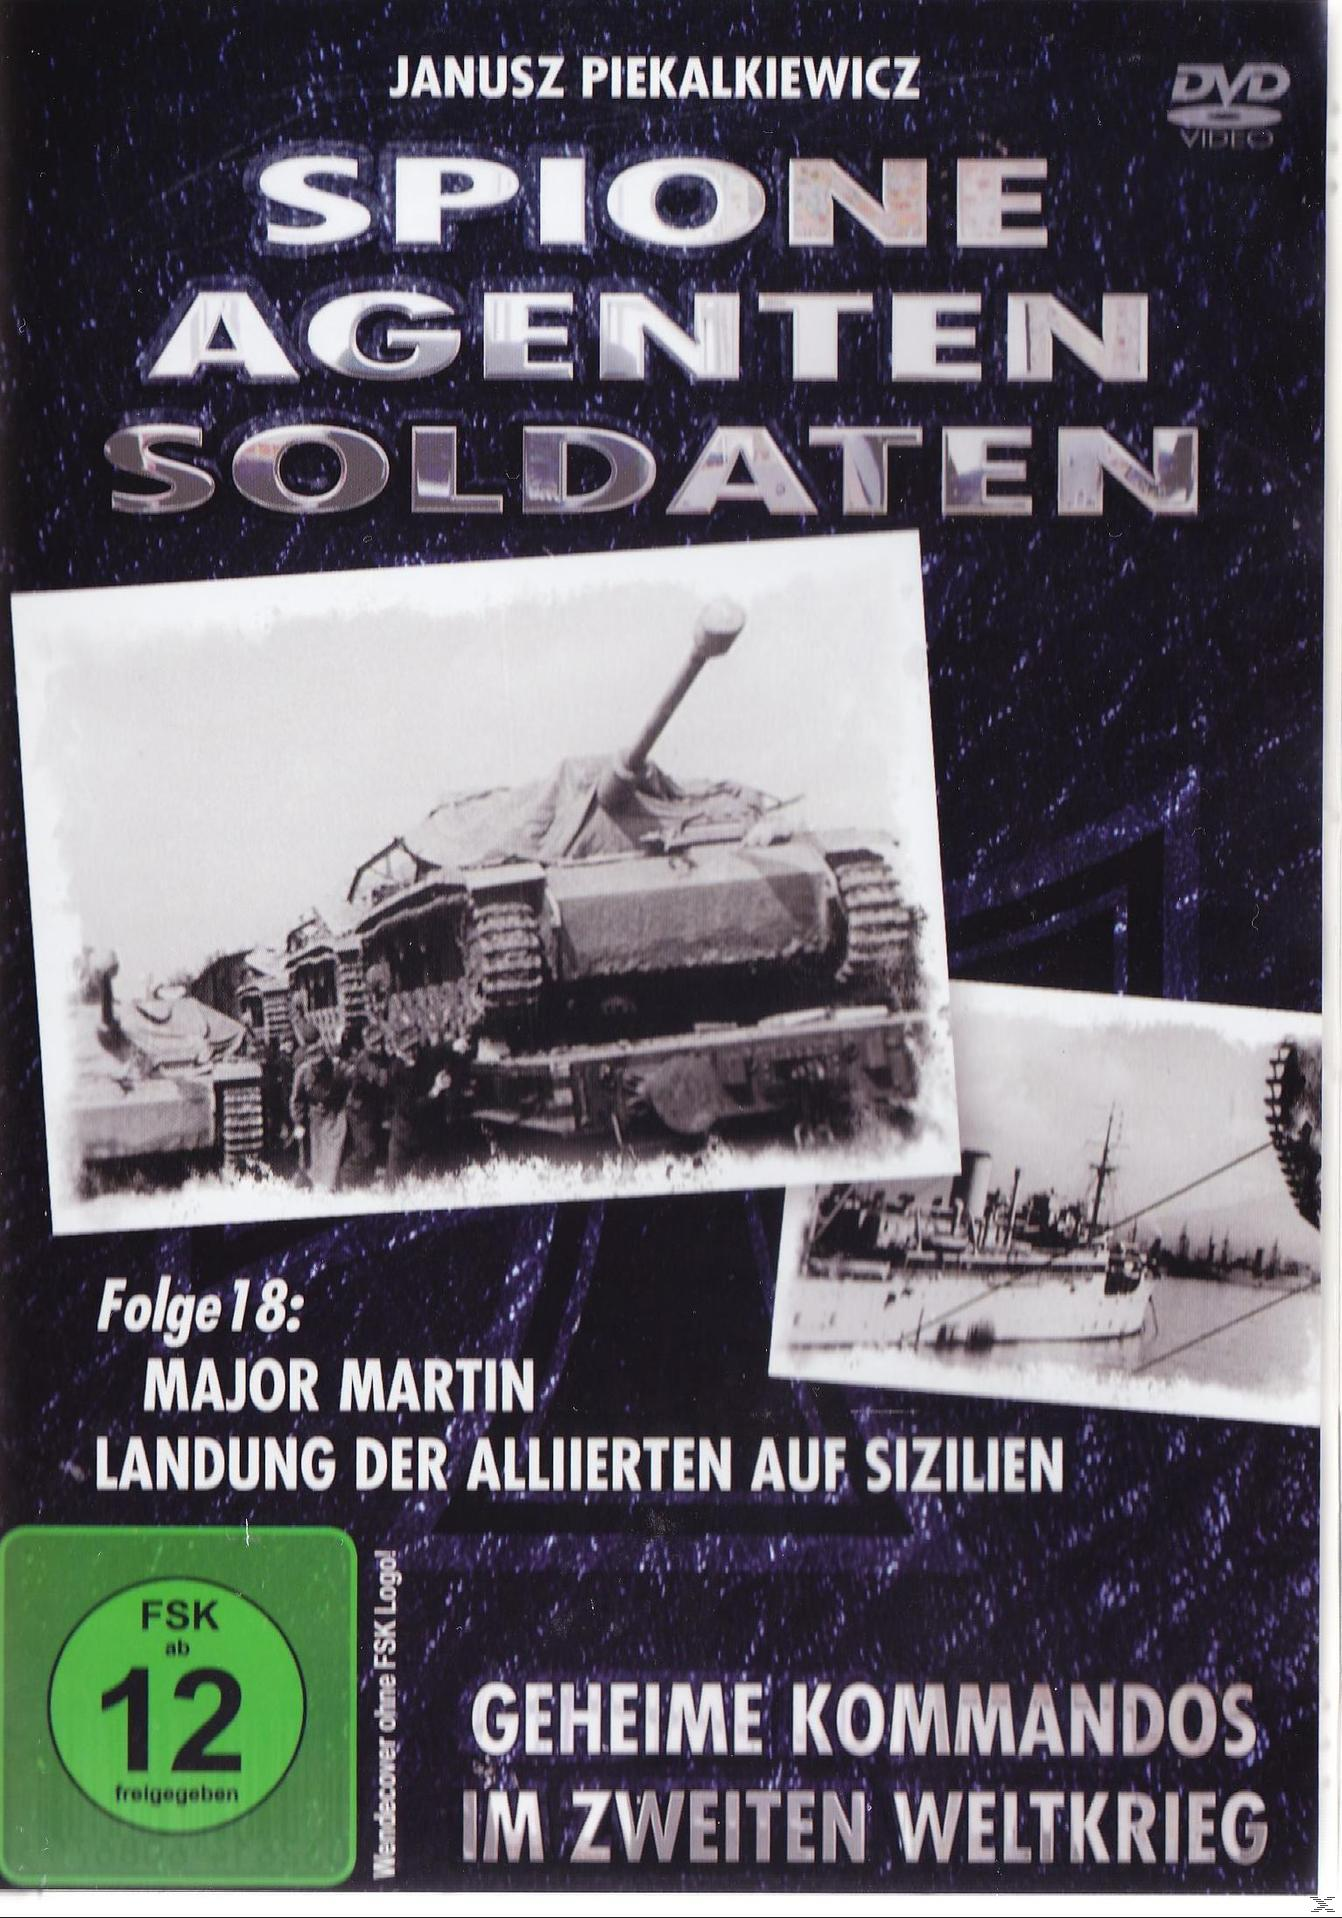 Spione, Agenten, Soldaten, Folge DVD Martin: der 18 Major - Alliierten Sizilien auf Landung